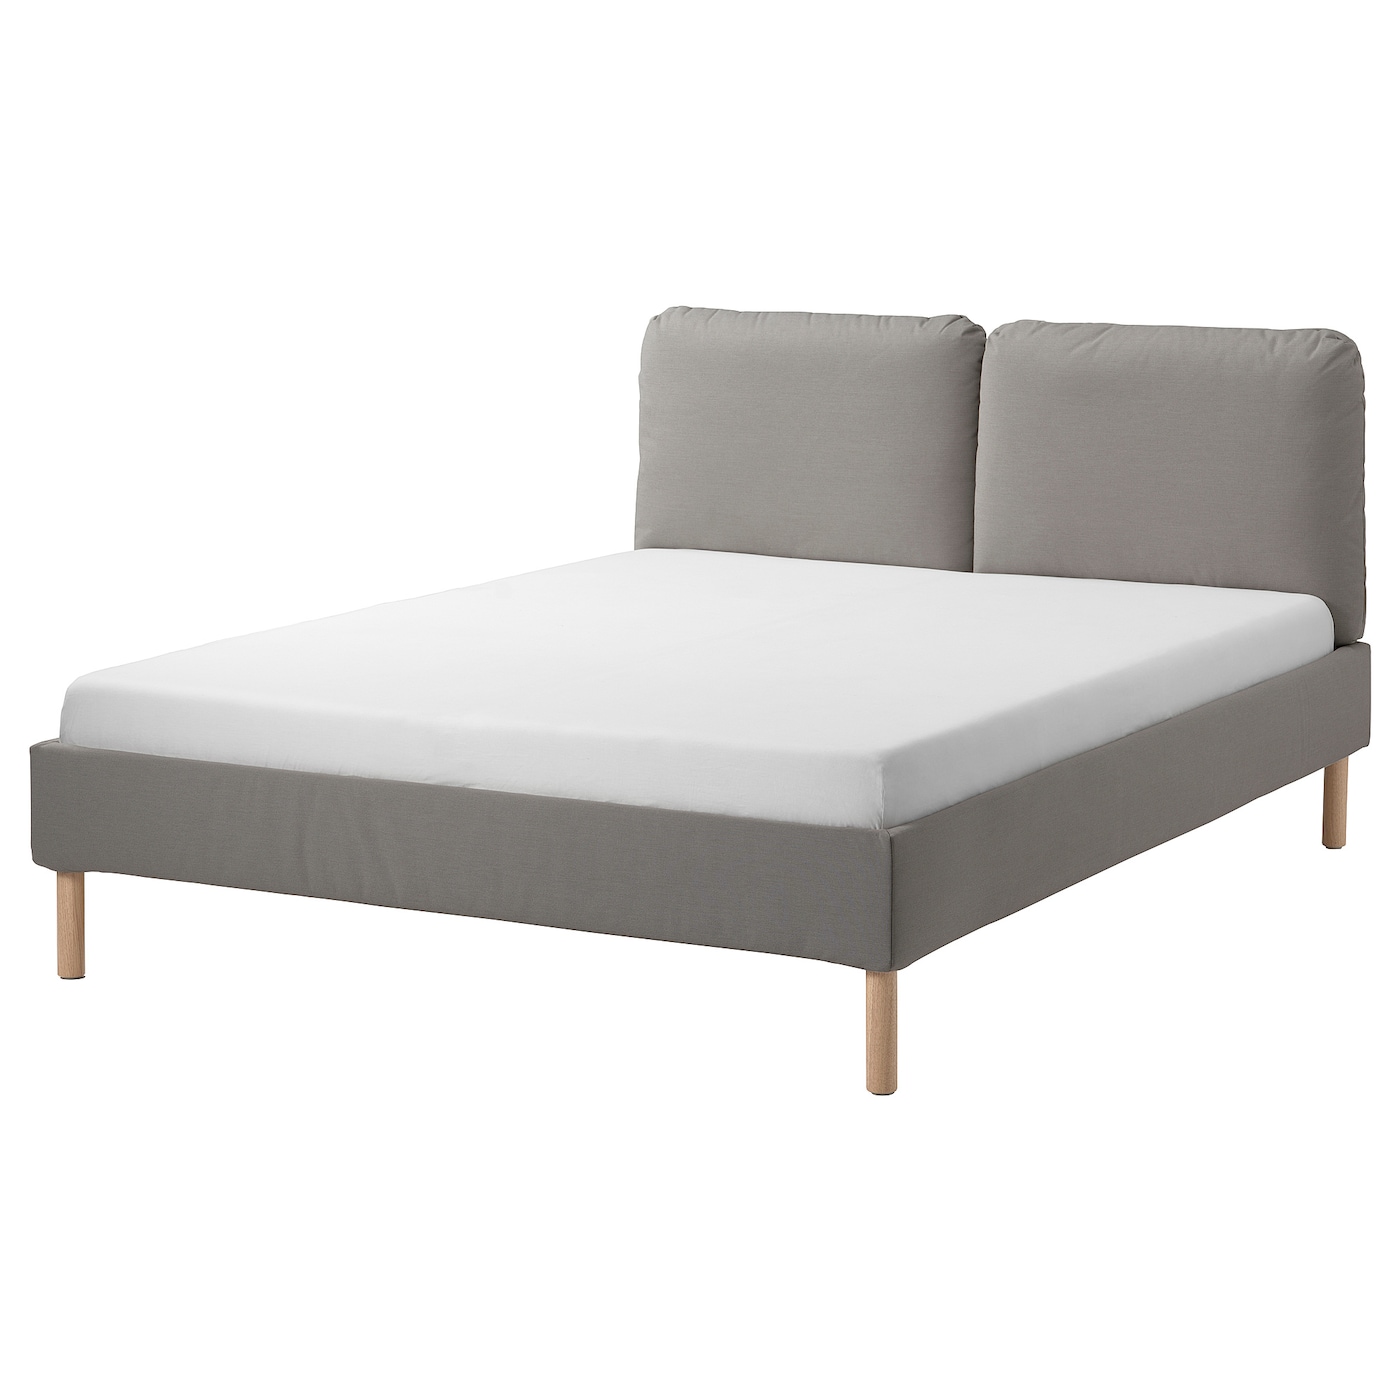 Каркас кровати с мягкой обивкой - IKEA SAGESUND, 200х160 см, серый, САГЕСУНД ИКЕА